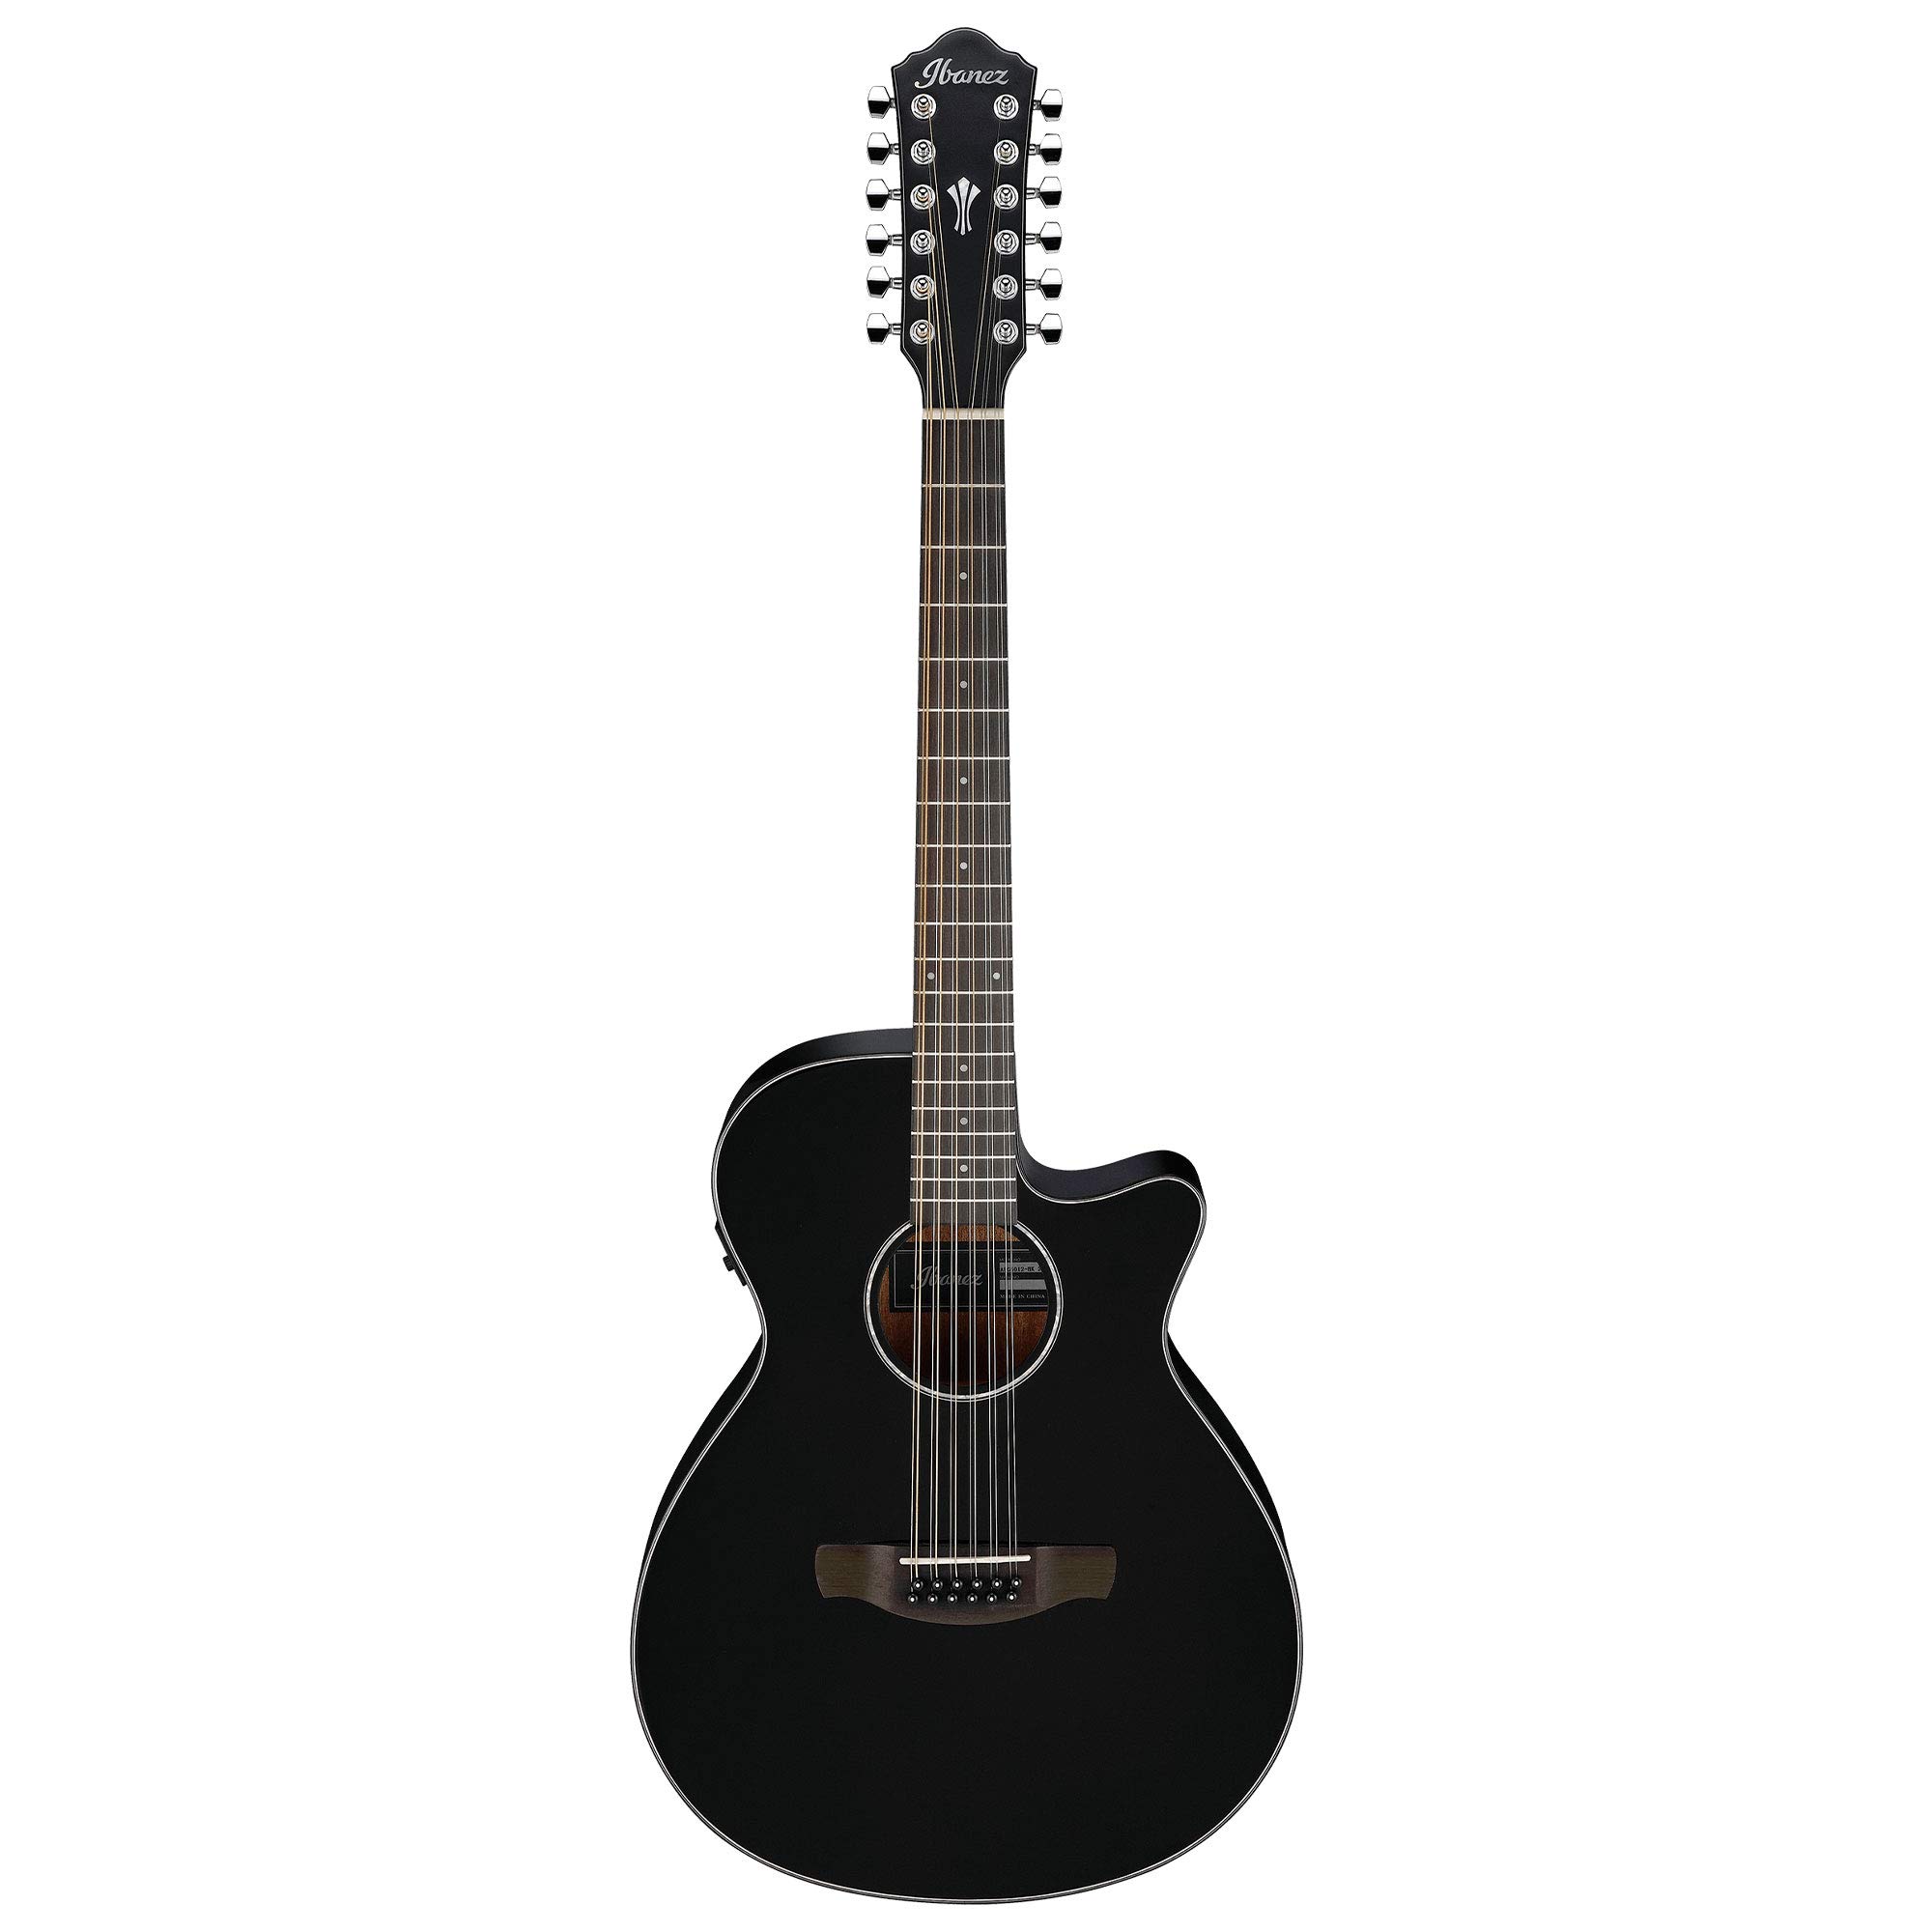 Ibanez AEG5012 AEG シリーズ シングルカッタウェイ 12 弦アコースティックエレクトリックギター、ブラック